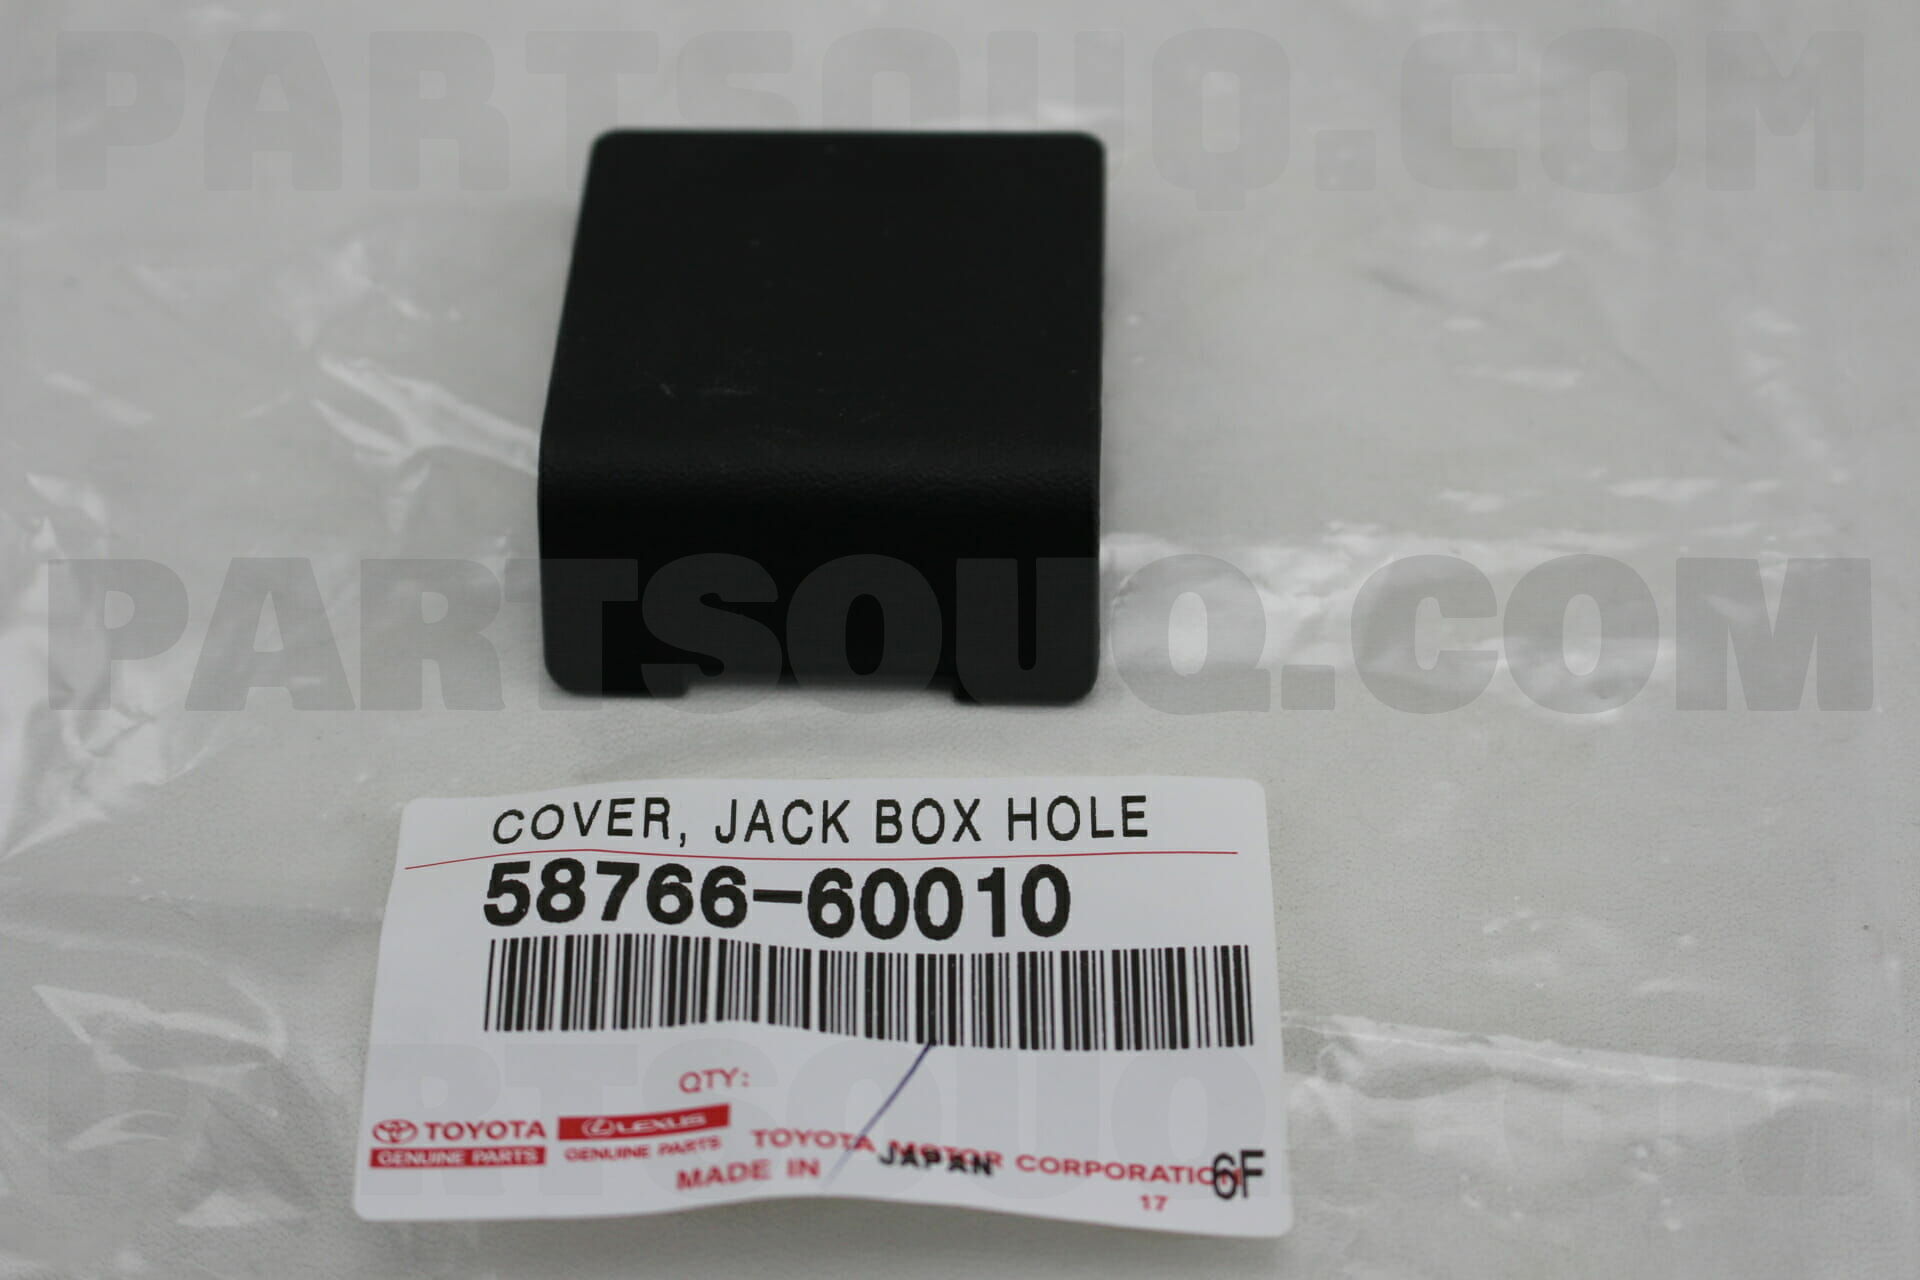 COVER, JACK BOX HOLE 5876660010 | Toyota Parts | PartSouq